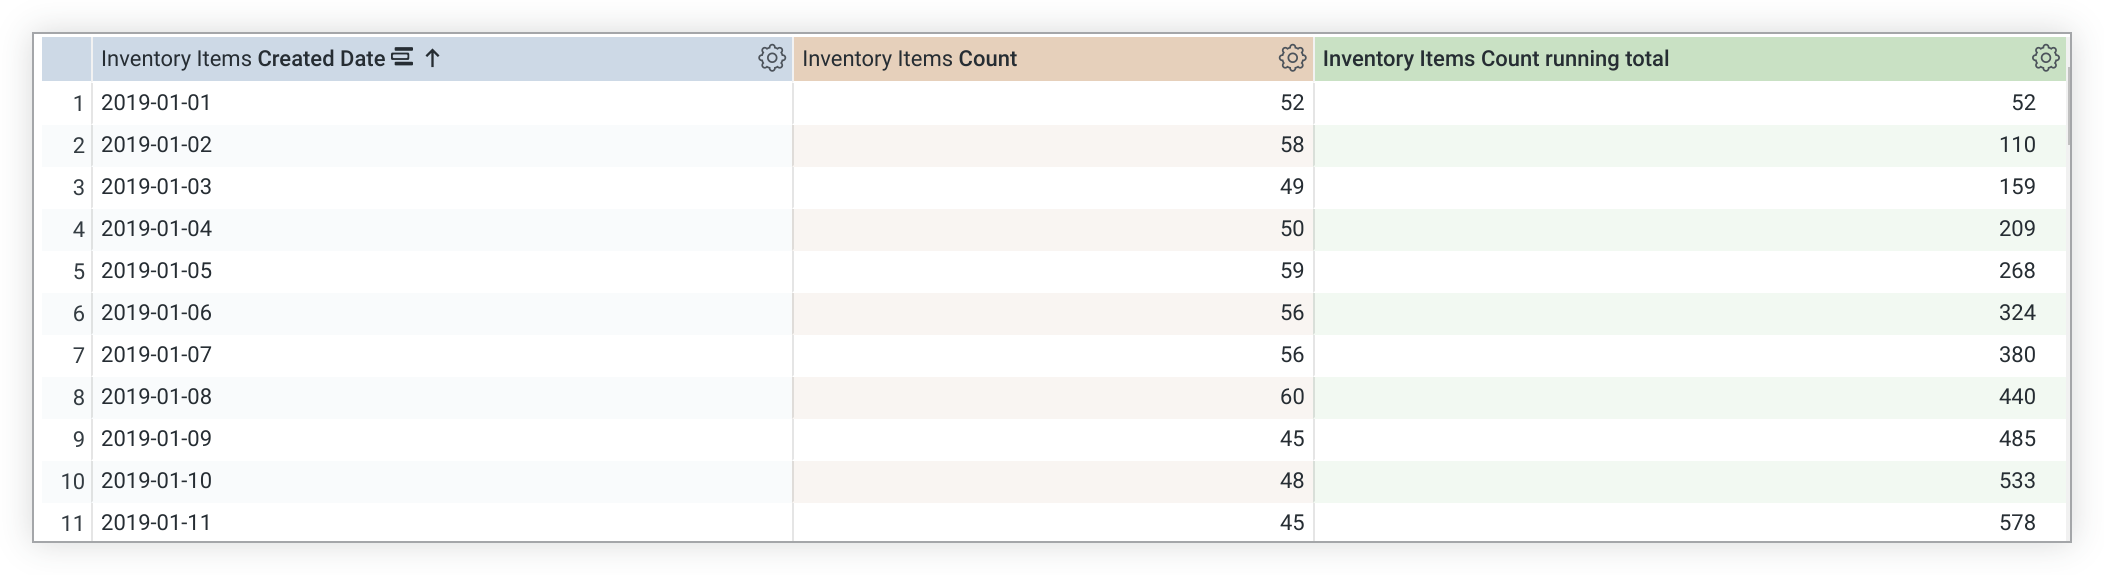 Explorar a tabela de dados mostrando uma nova coluna para o cálculo do total da tabela "Contagem de itens de inventário".